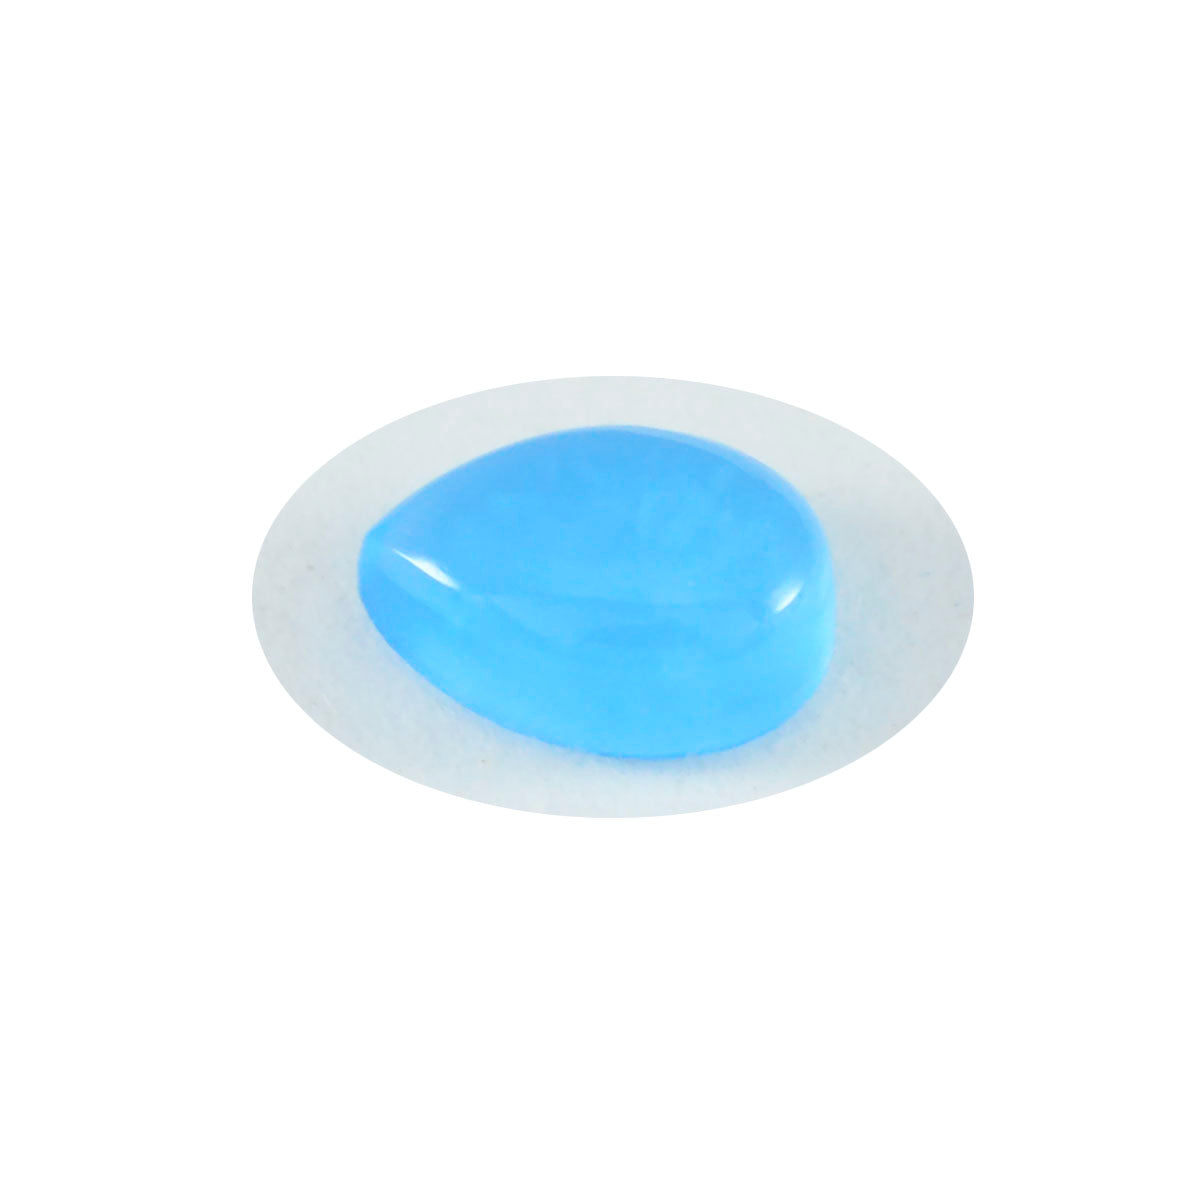 riyogems 1шт кабошон из синего халцедона 12x16 мм грушевидной формы A1 качество драгоценный камень